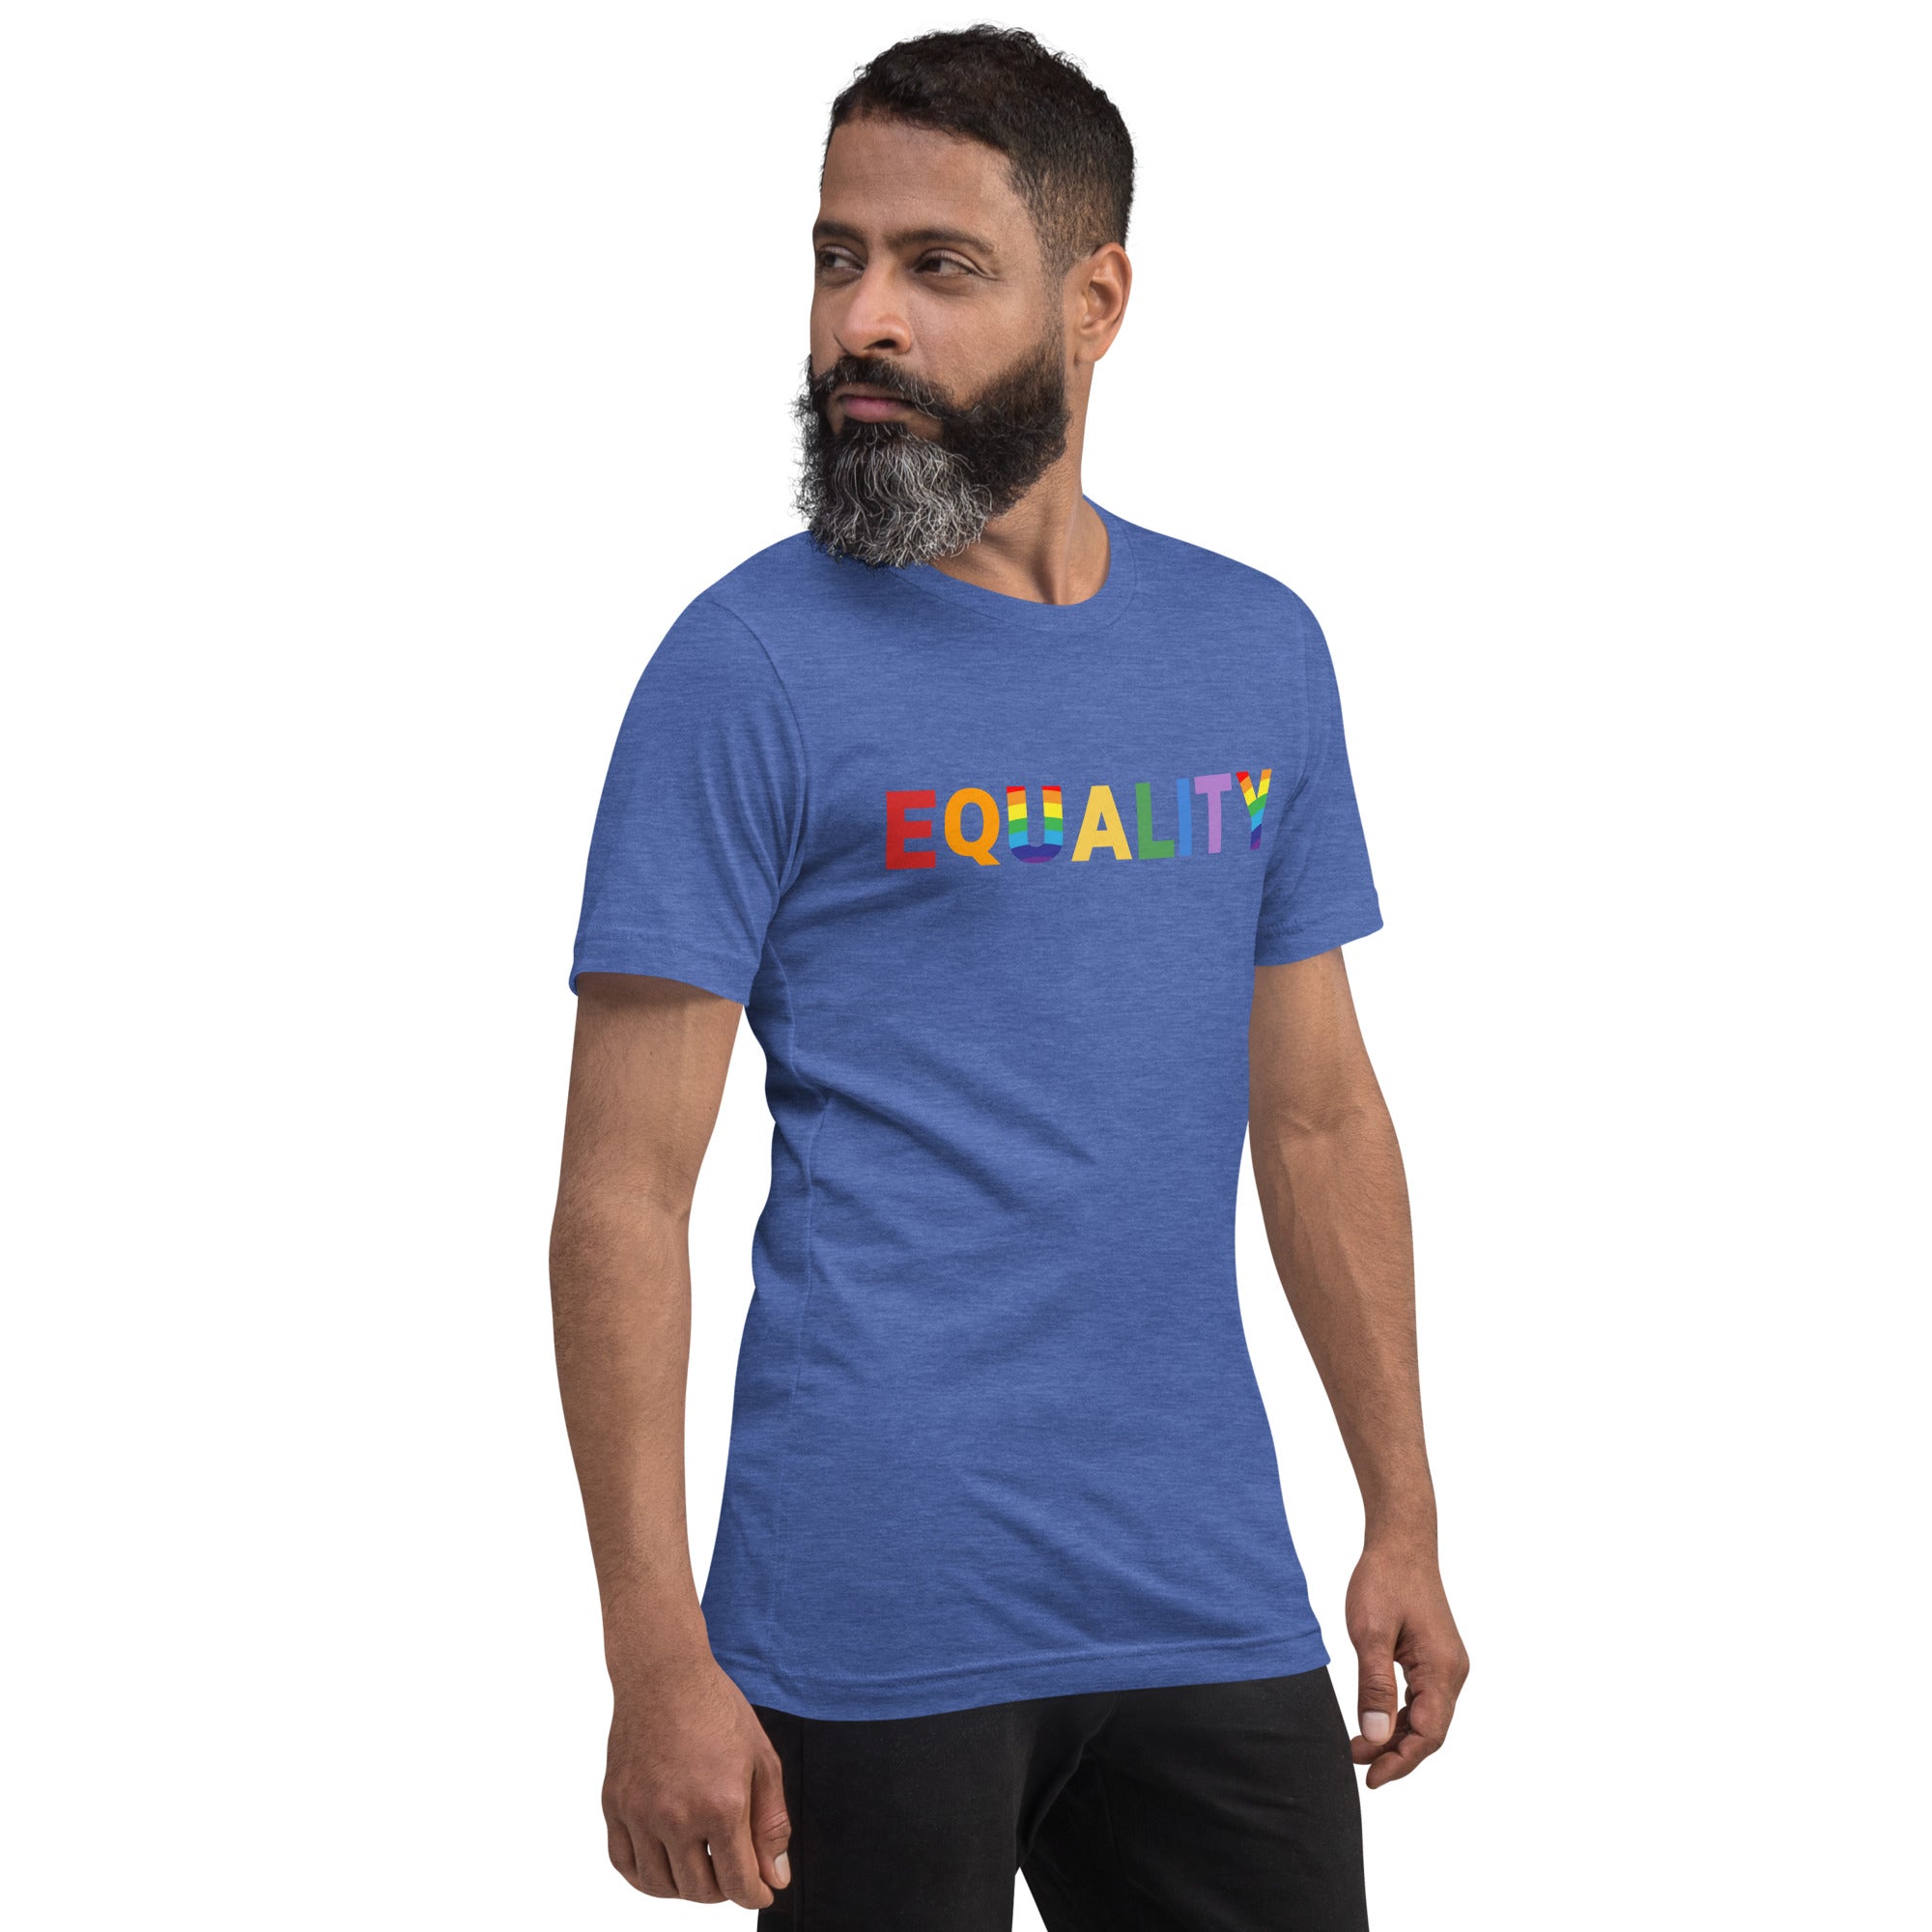 Equality - Unisex T-Shirt